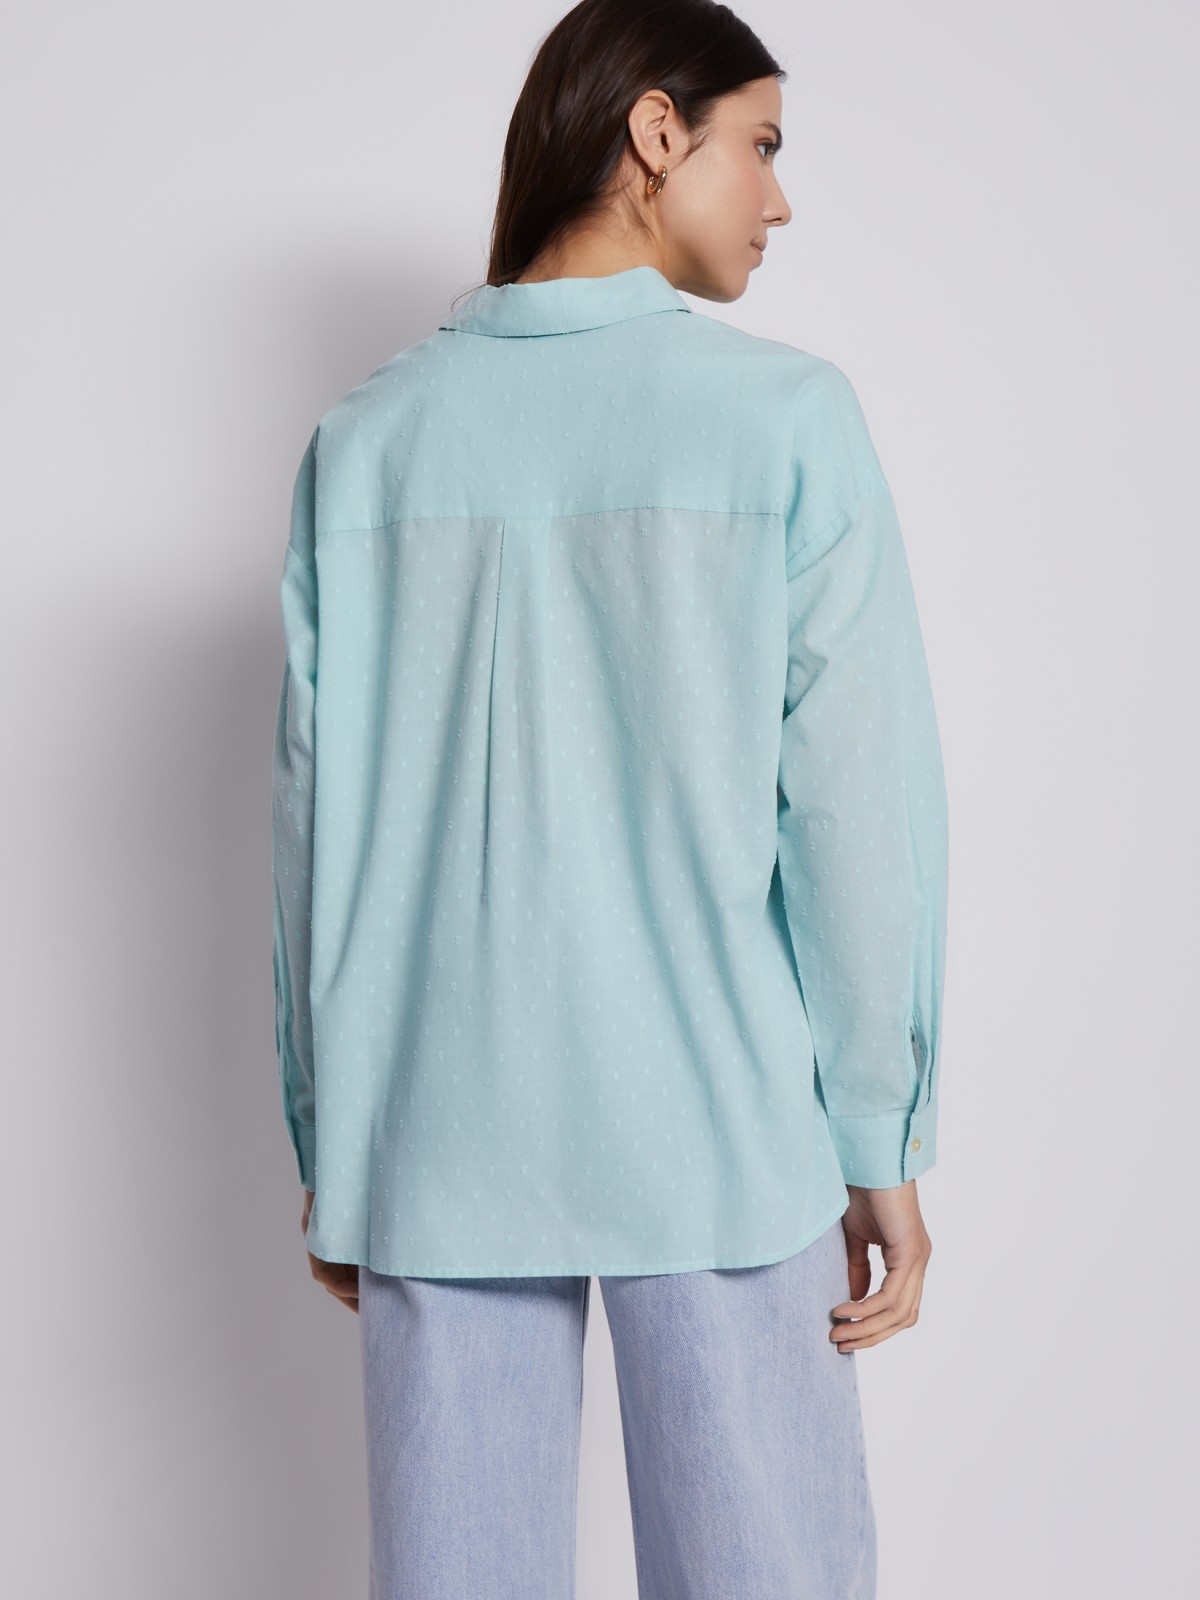 Рубашка из хлопка с подхватами на рукавах zolla 023211159113, цвет мятный, размер XS - фото 6